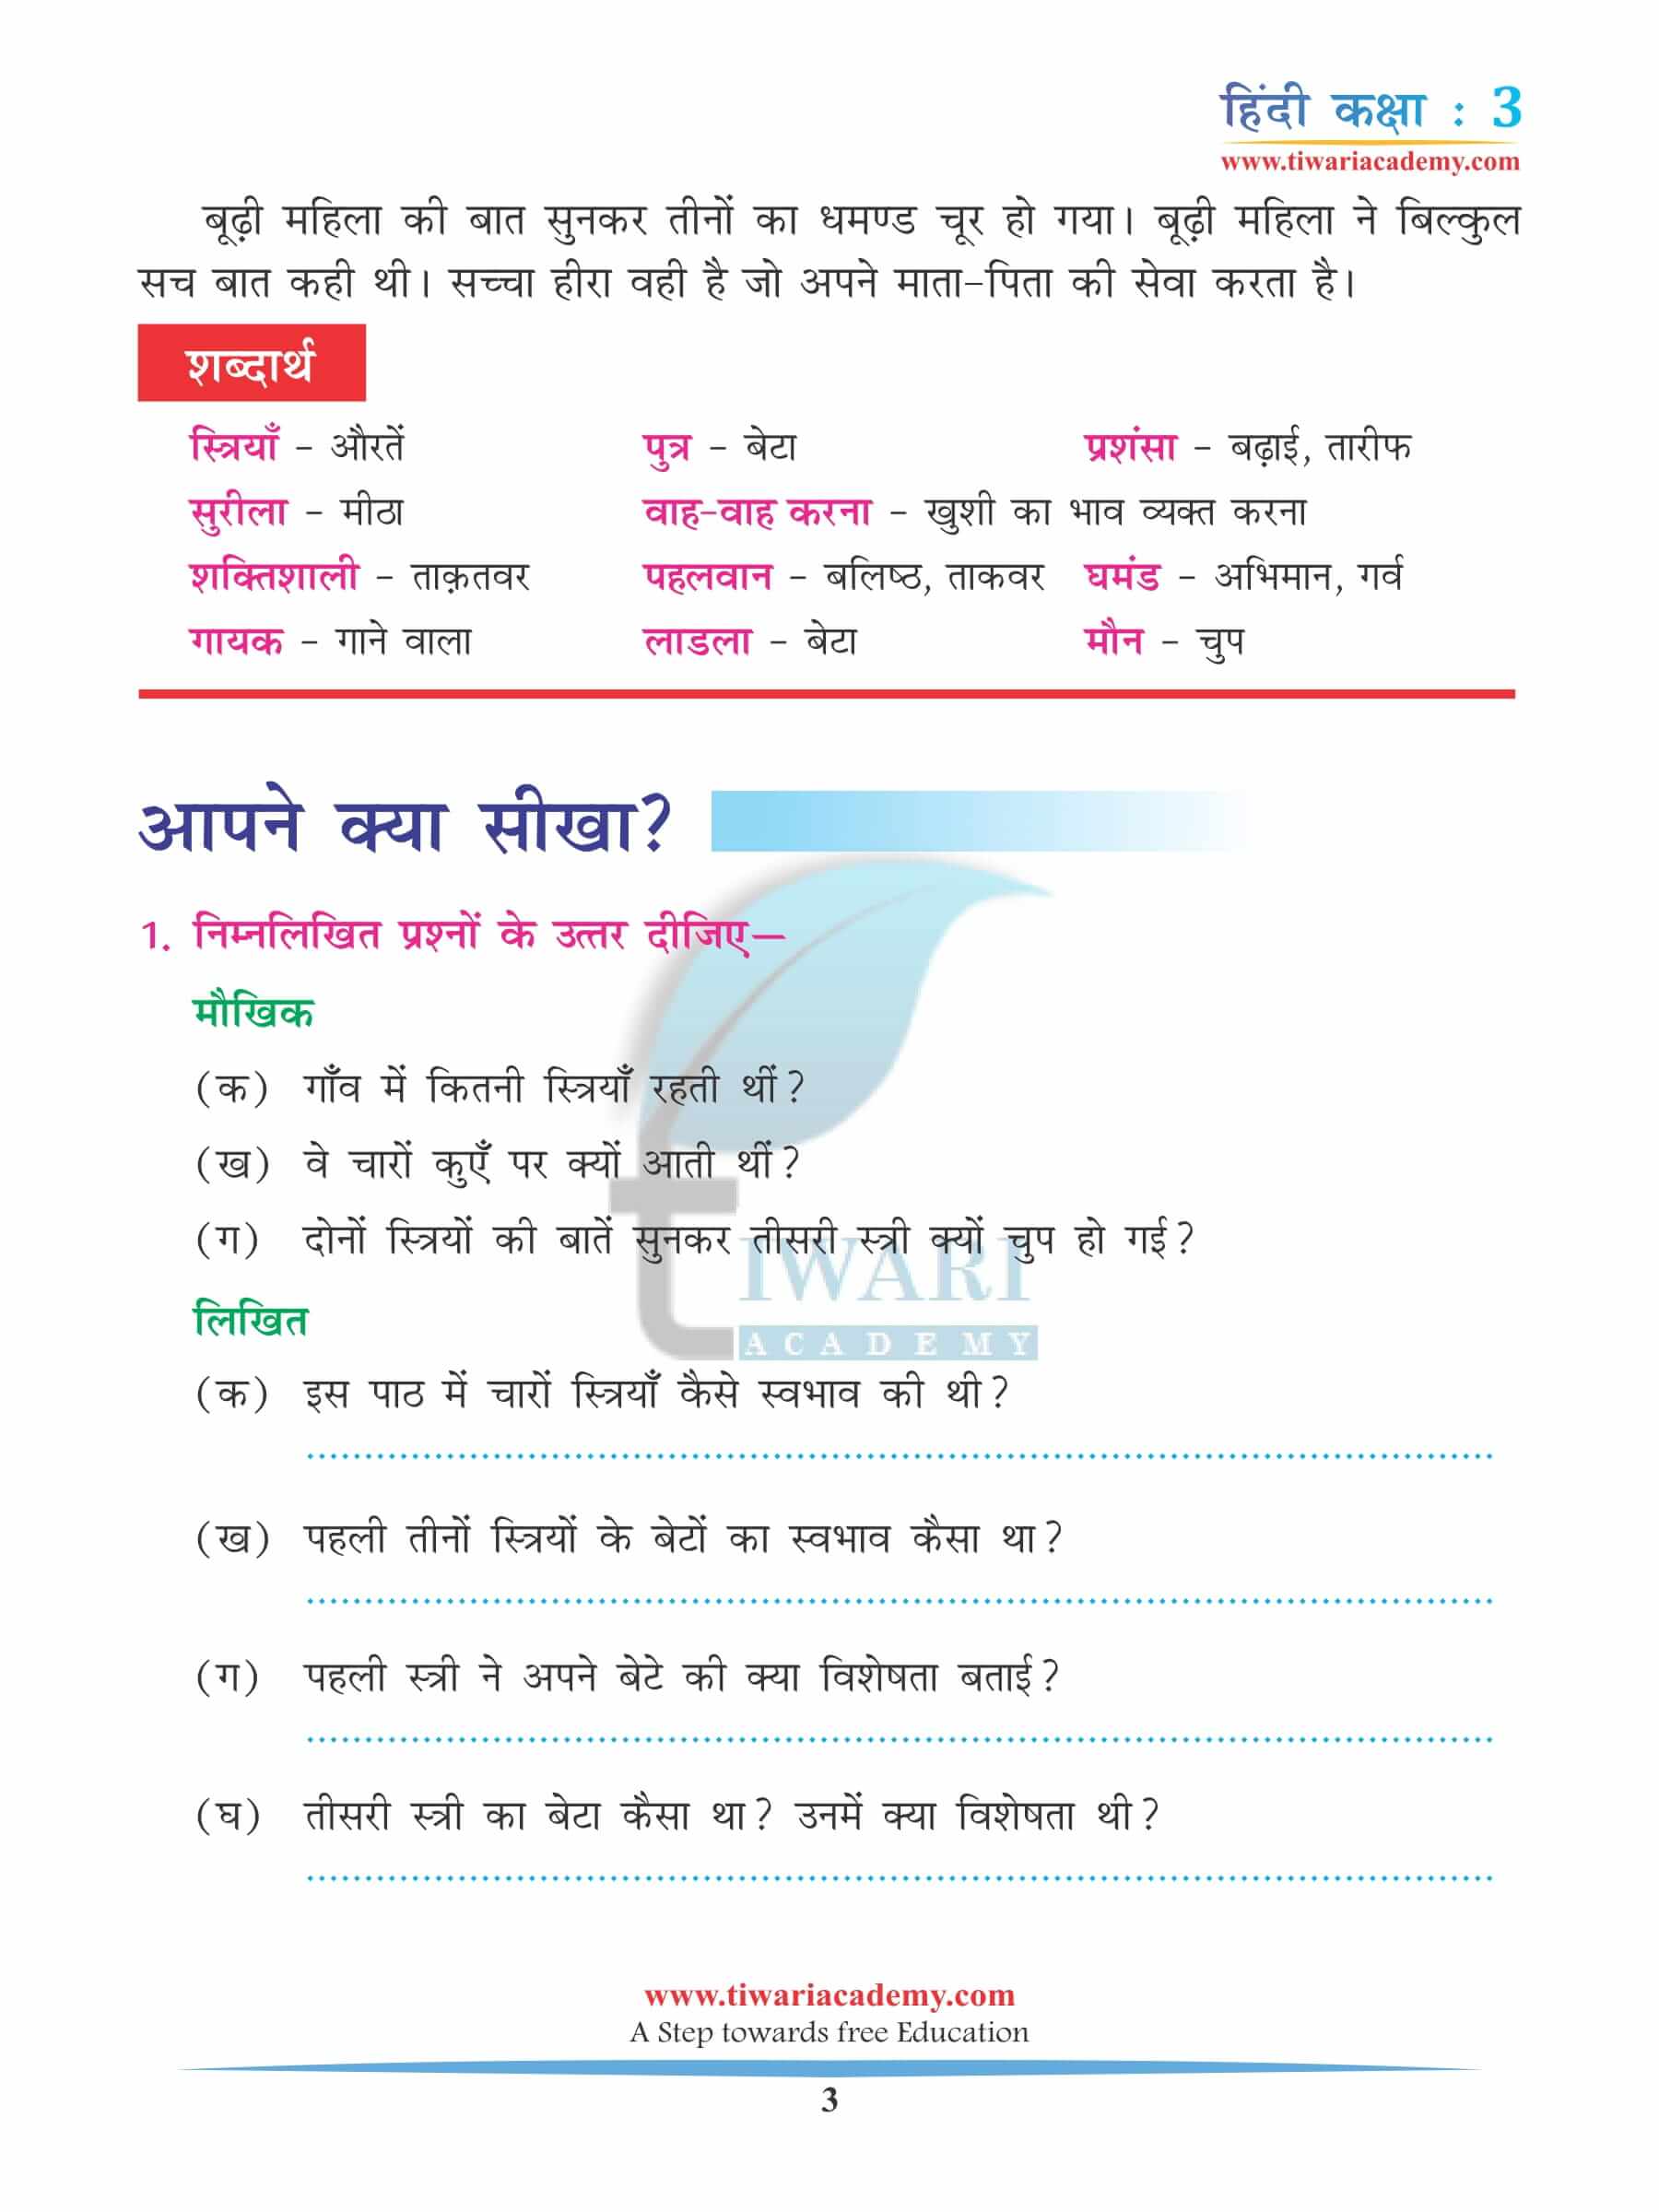 कक्षा 3 हिंदी अध्याय 12 अभ्यास के प्रश्न